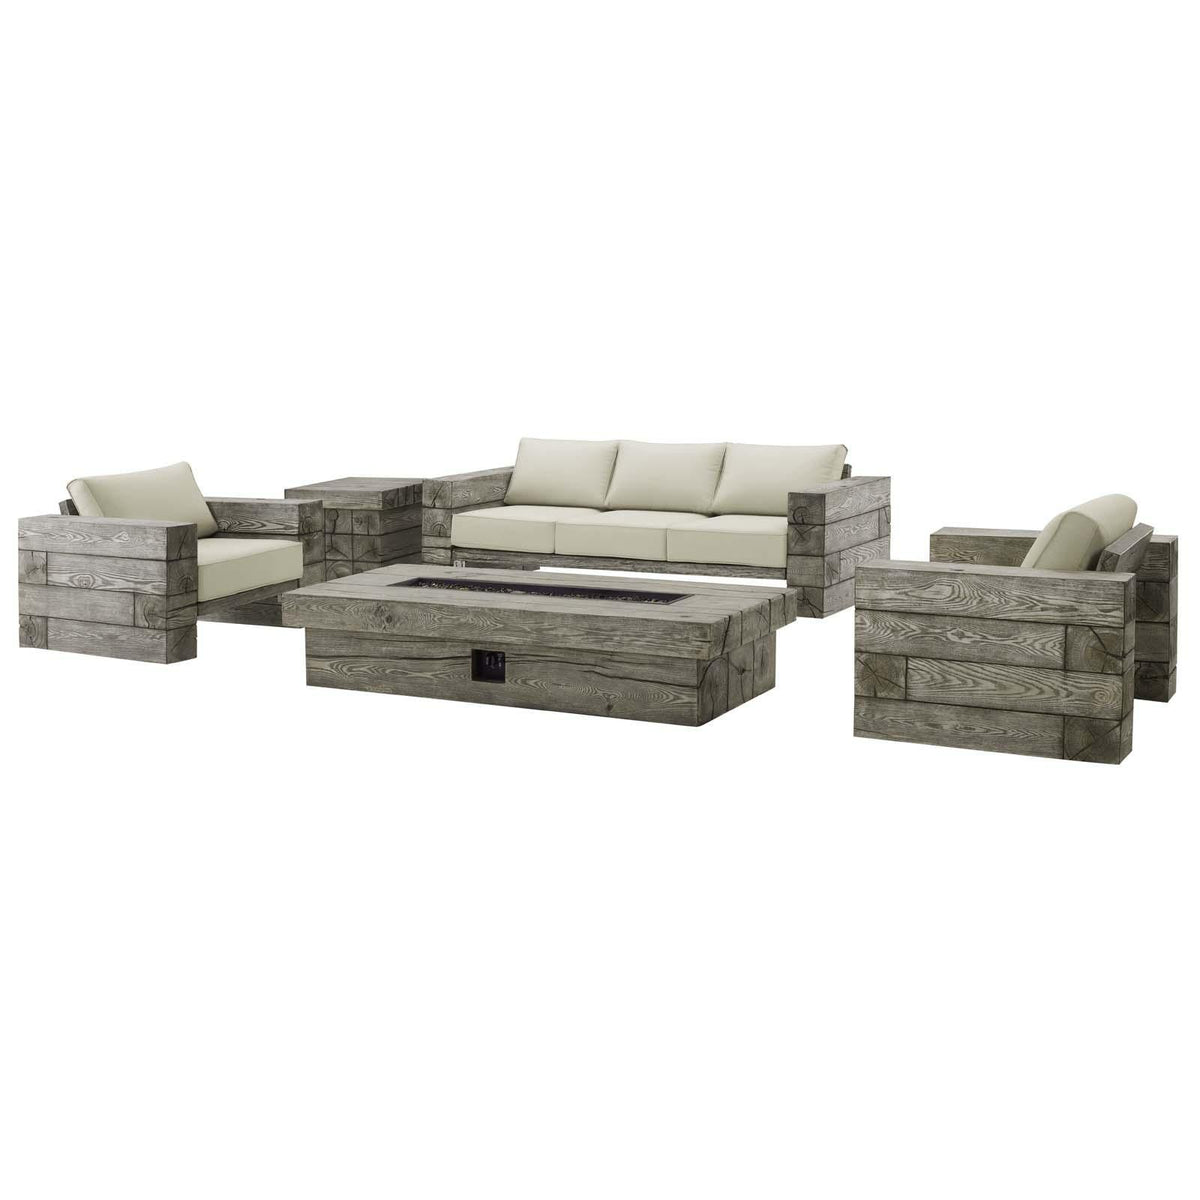 Modway Furniture Modern Manteo Rustic Coastal Outdoor Patio Sunbrella® 5 Piece Set - EEI-3651